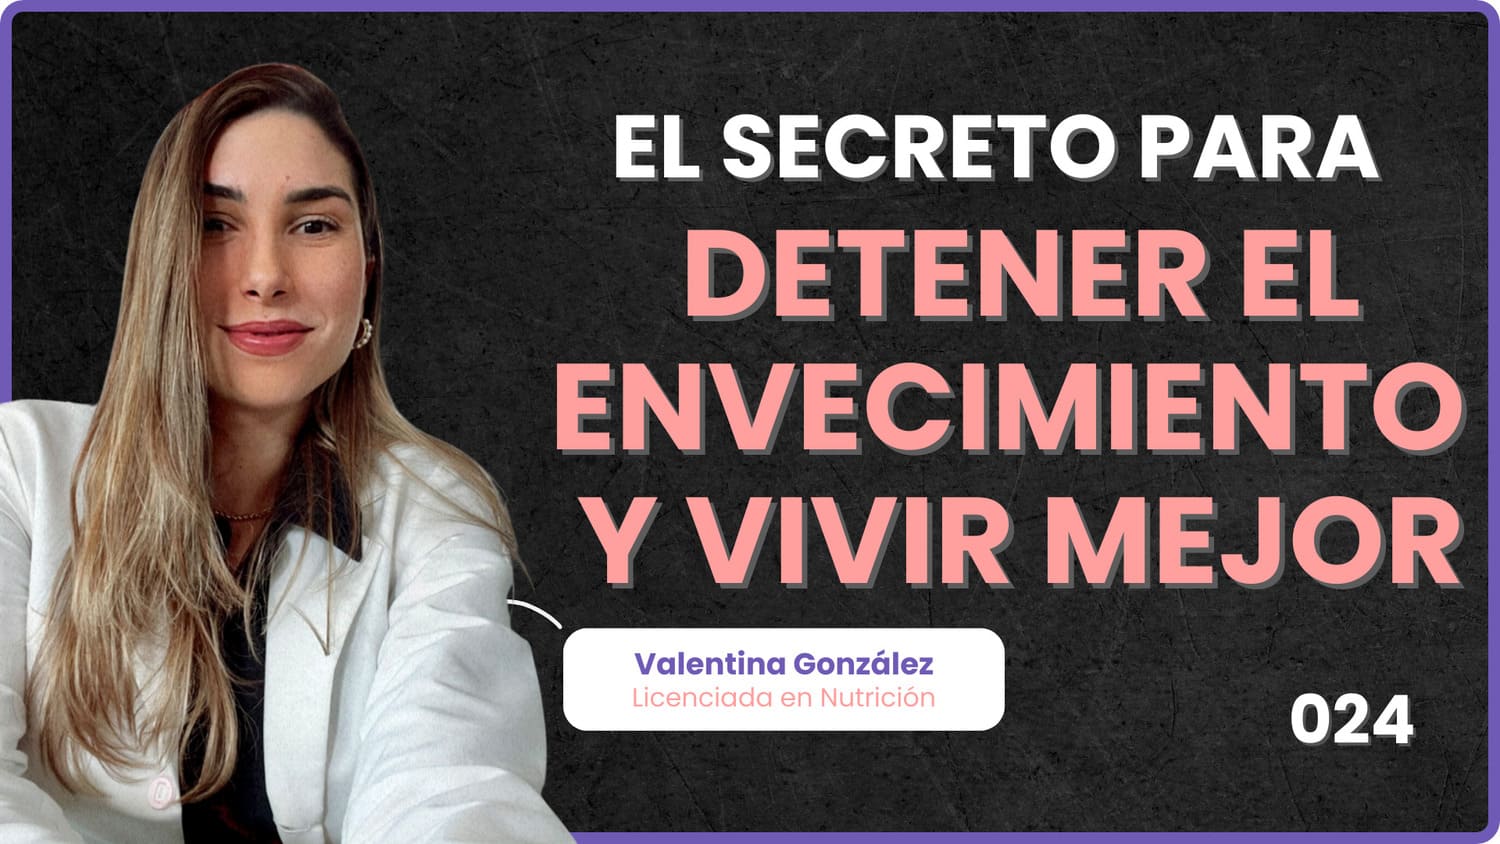 024 - El secreto para detener el envecimiento con Valentina Gonzalez